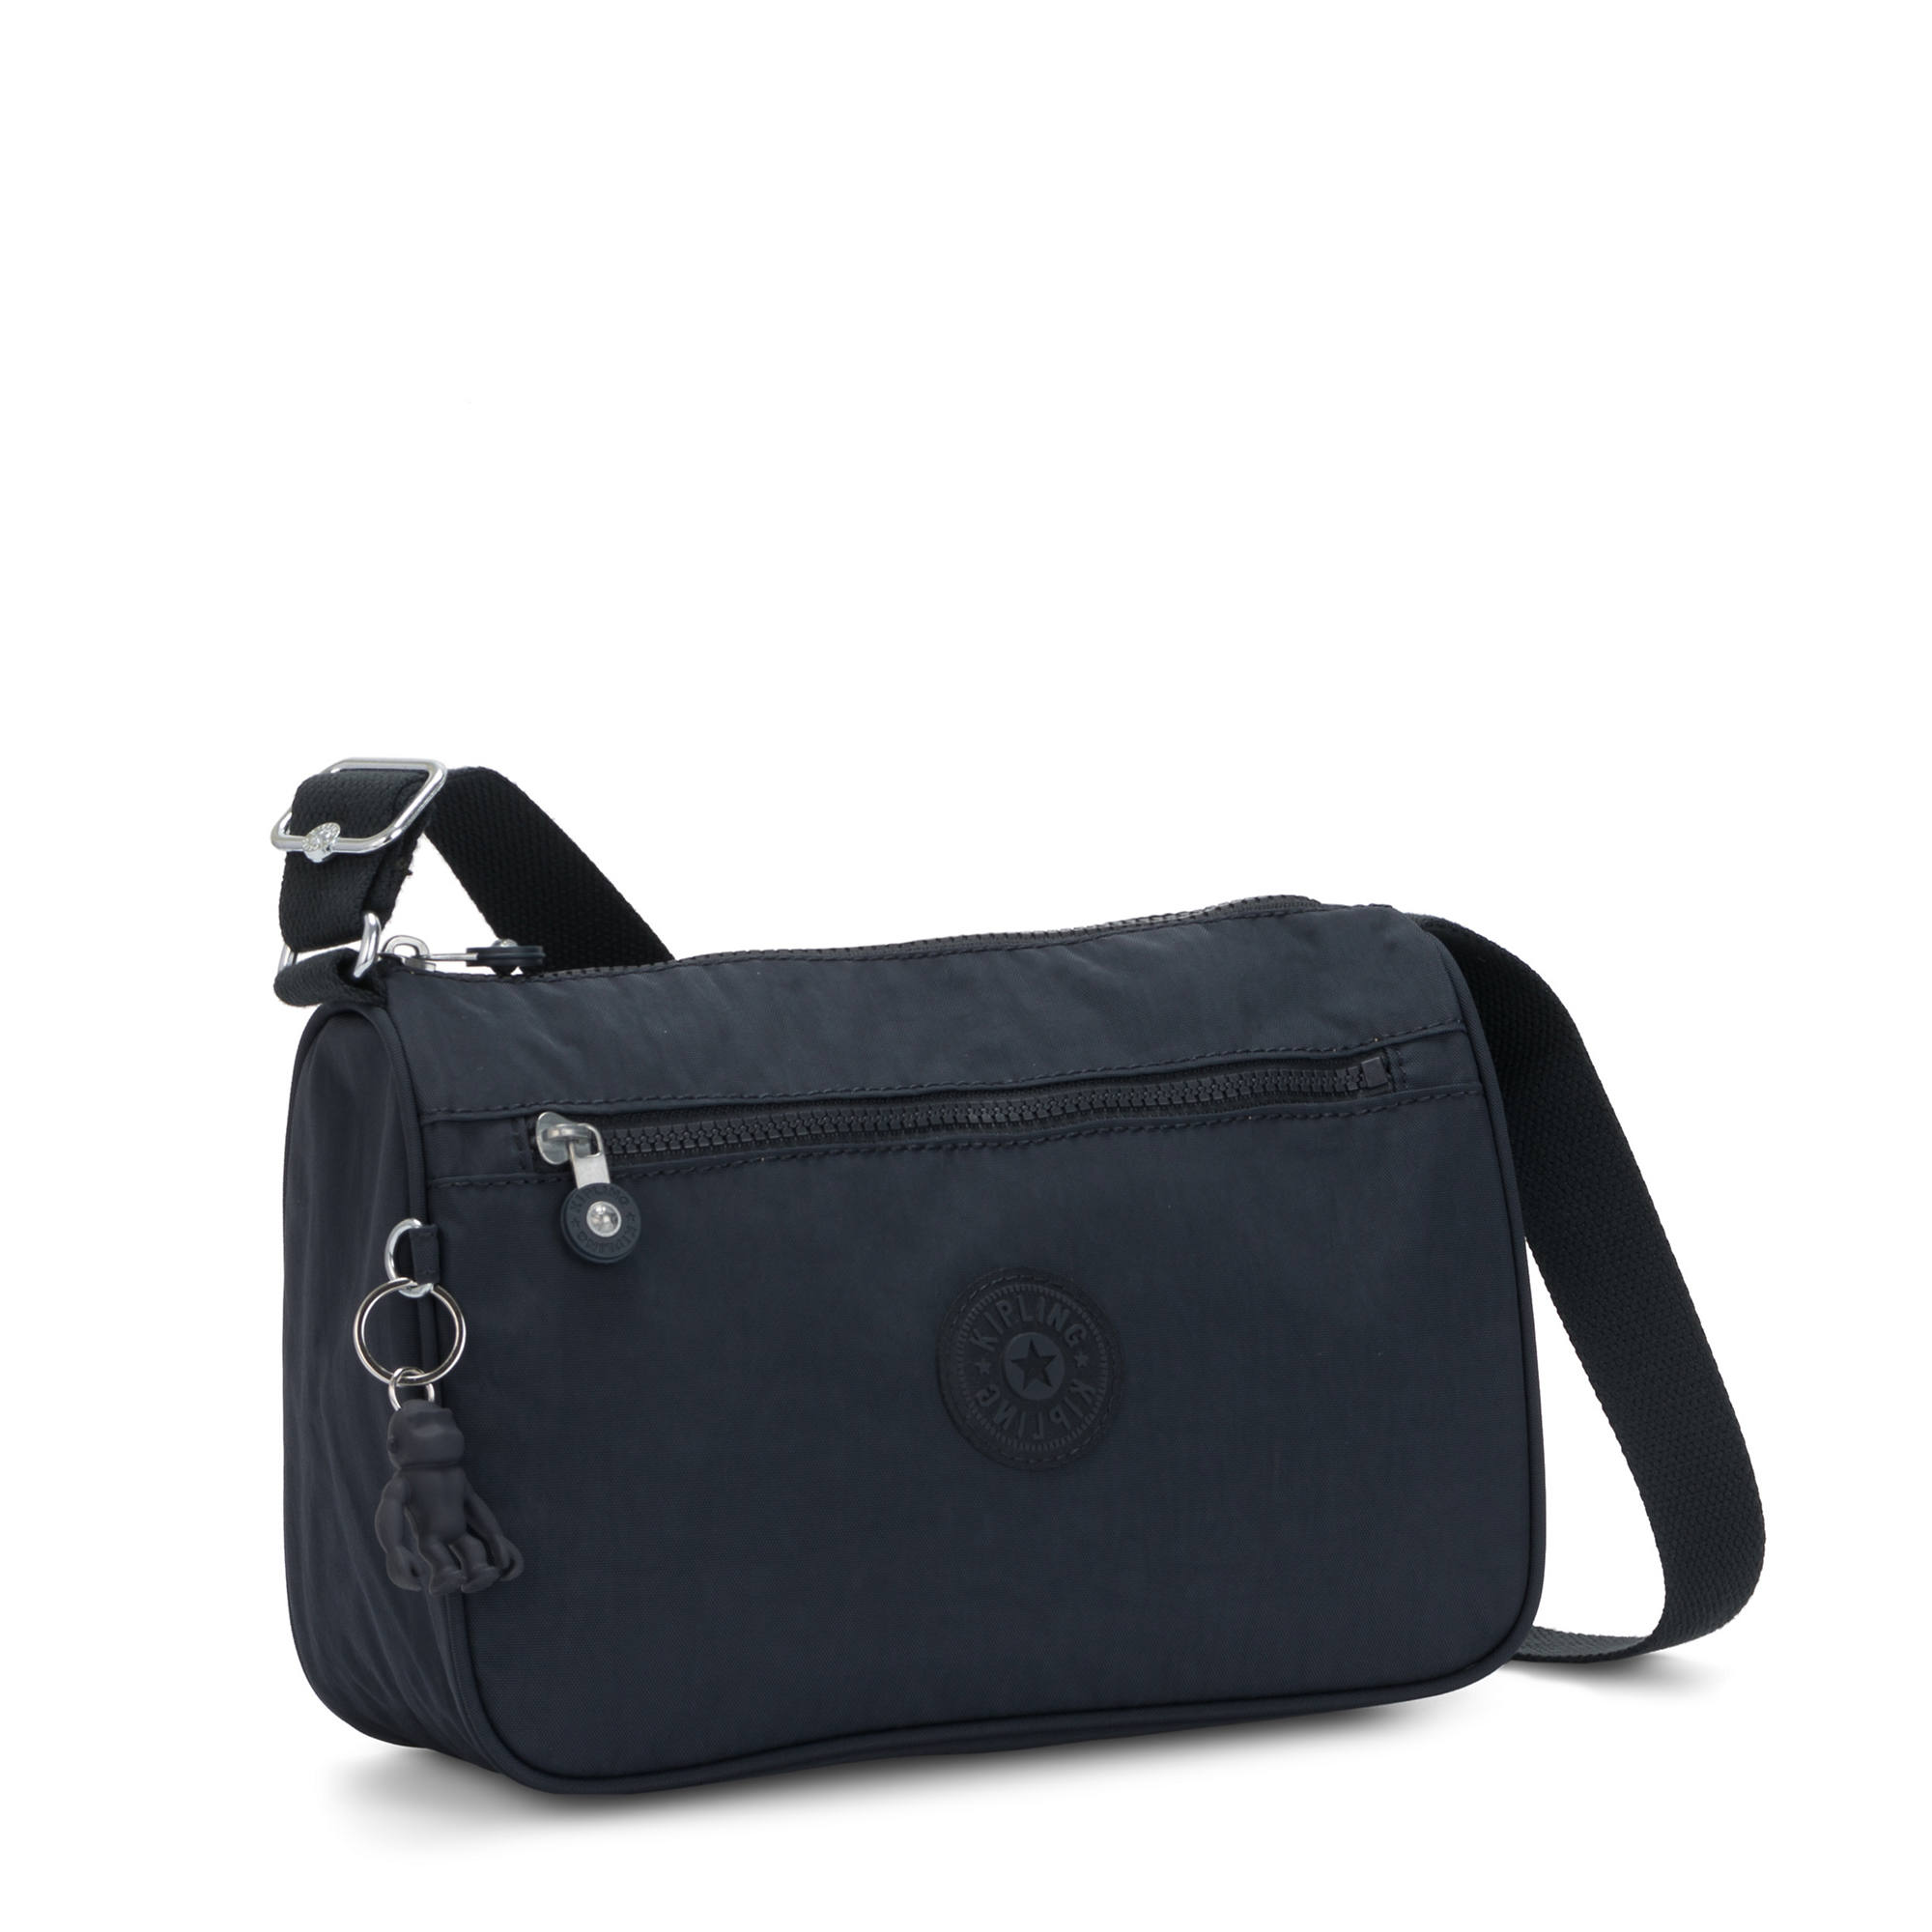 Kipling Callie Handbag | eBay